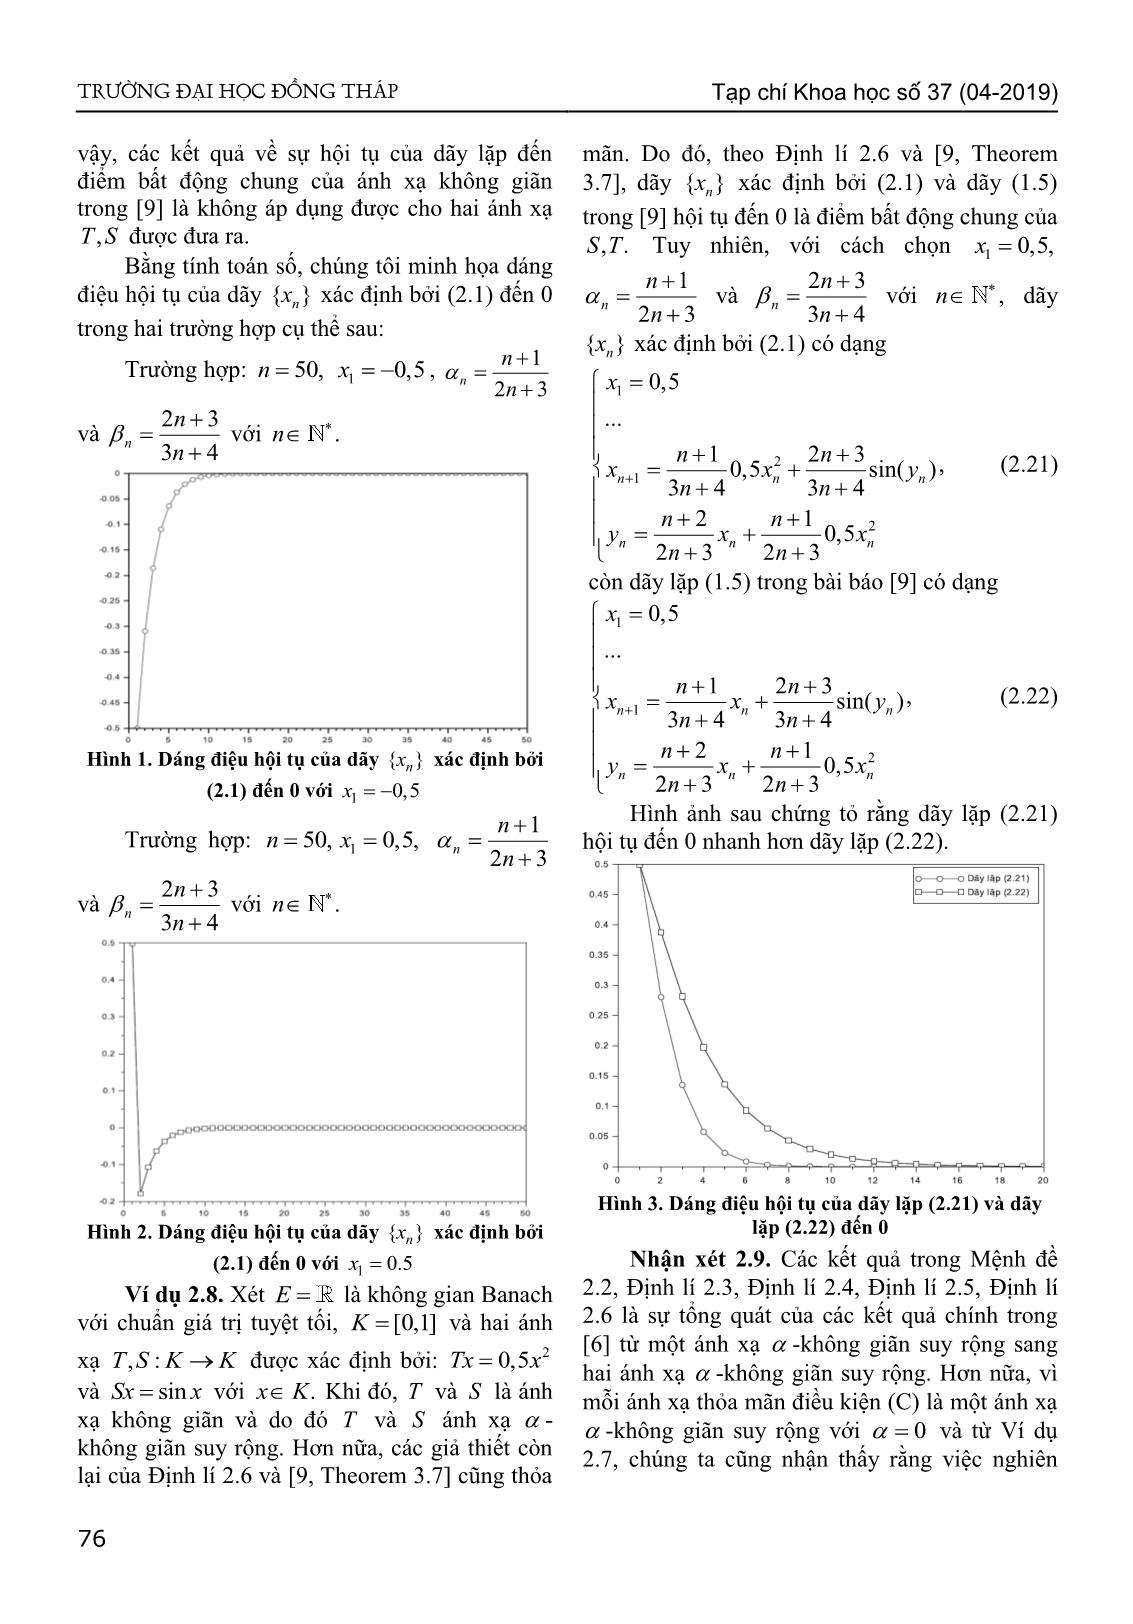 Sự hội tụ của dãy lặp kiểu Agarwal đến điểm bất động chung của hai ánh xạ - Không giãn suy rộng trong không gian Banach lồi đều trang 7